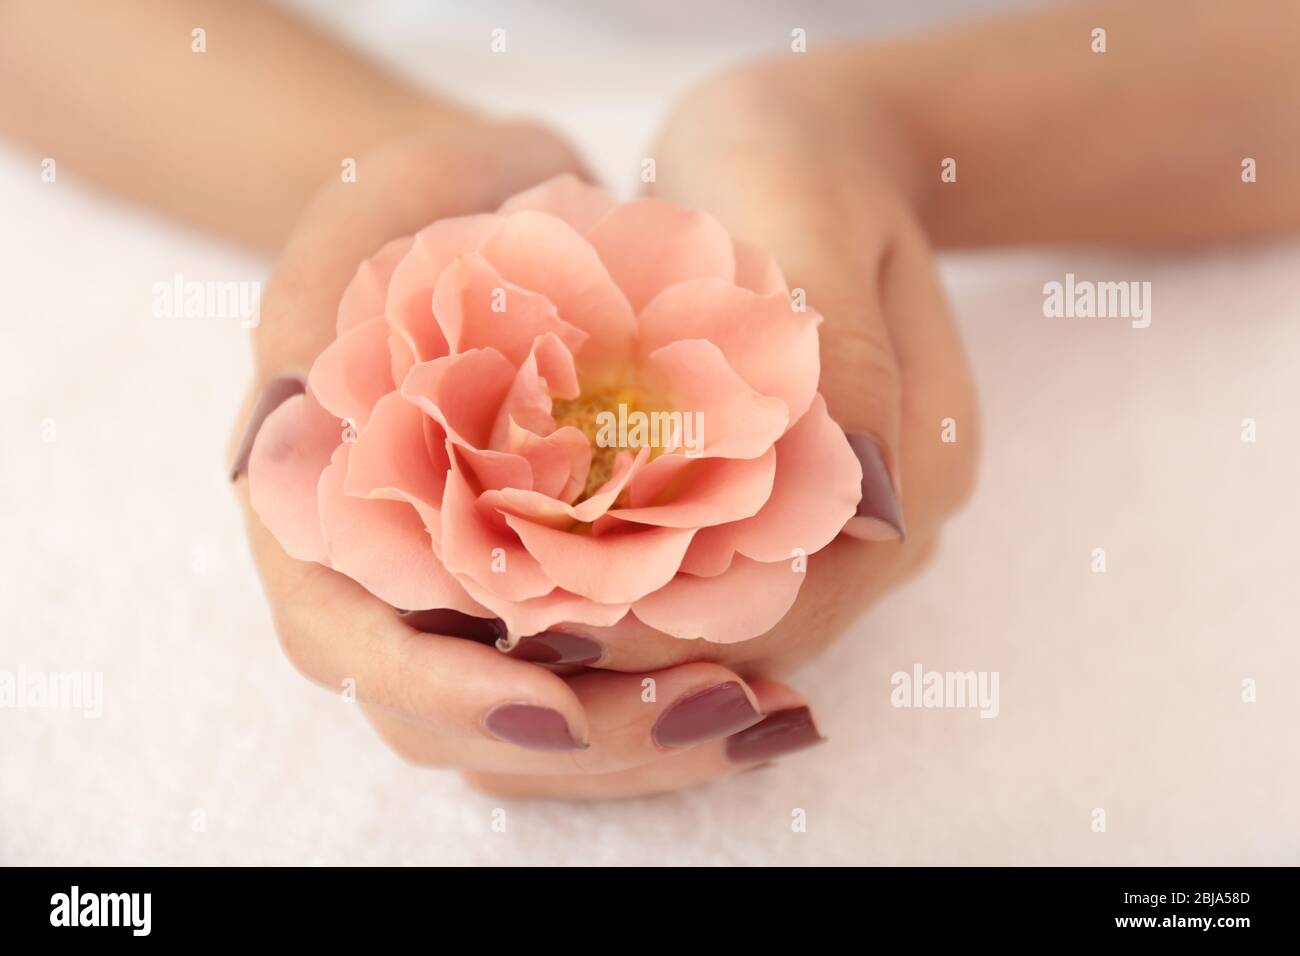 Mani femminili con manicure marrone che tiene il fiore su tessuto sfondo Foto Stock